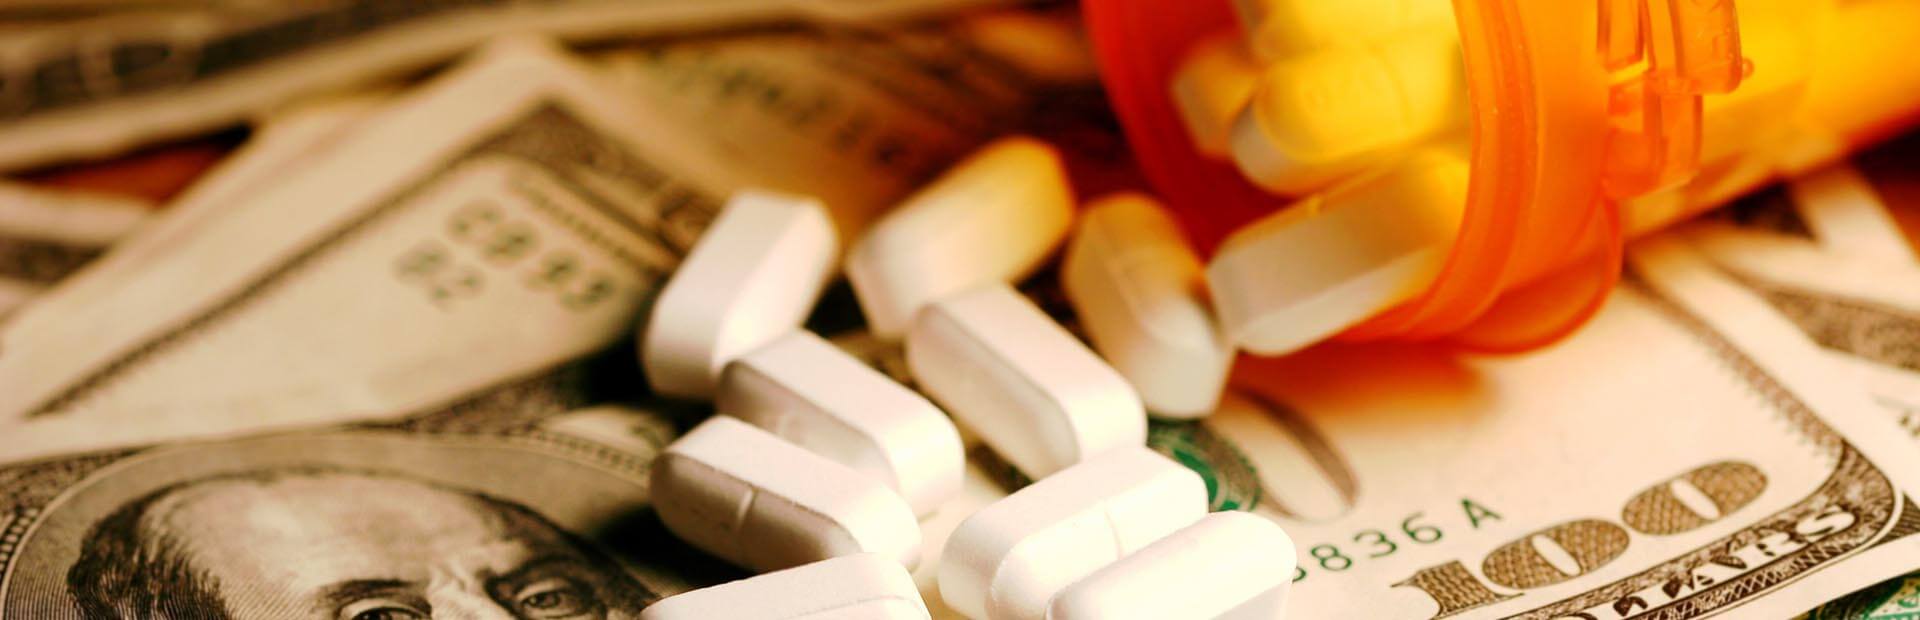 White pills spilling out of a prescription bottle onto hundred dollar bills